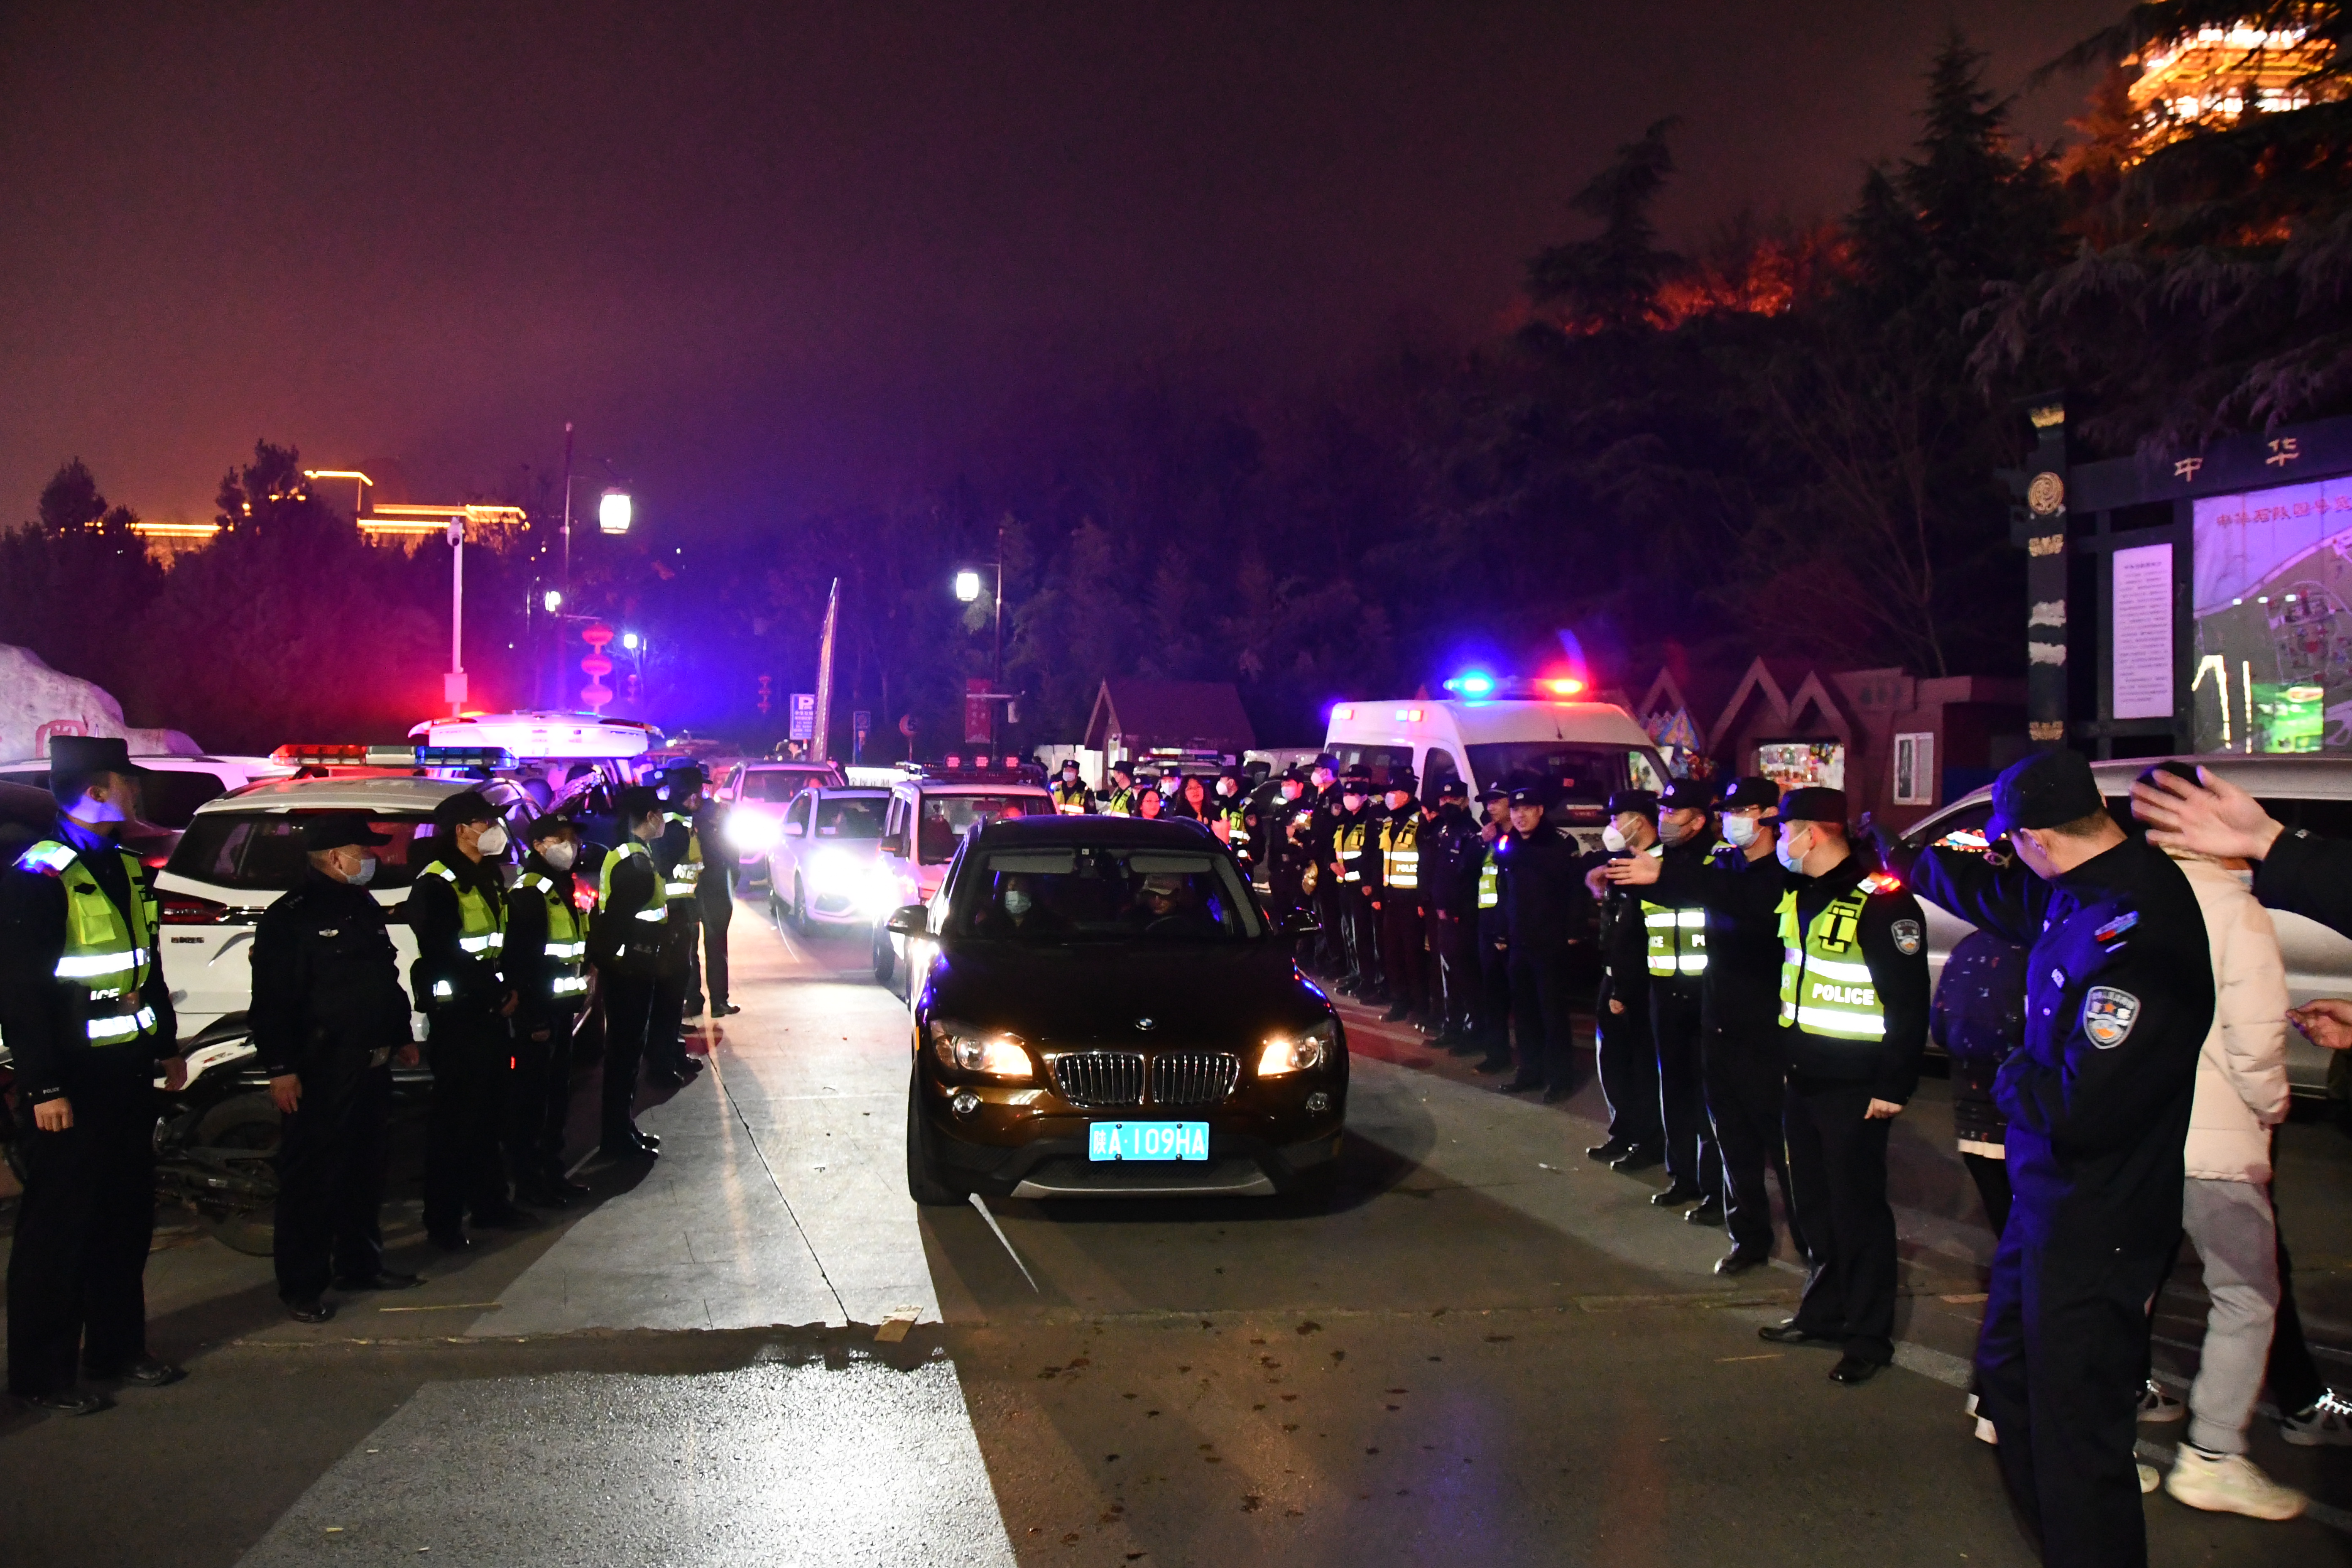 渭滨警方：“四到位”确保元宵节焰火燃放安全有序